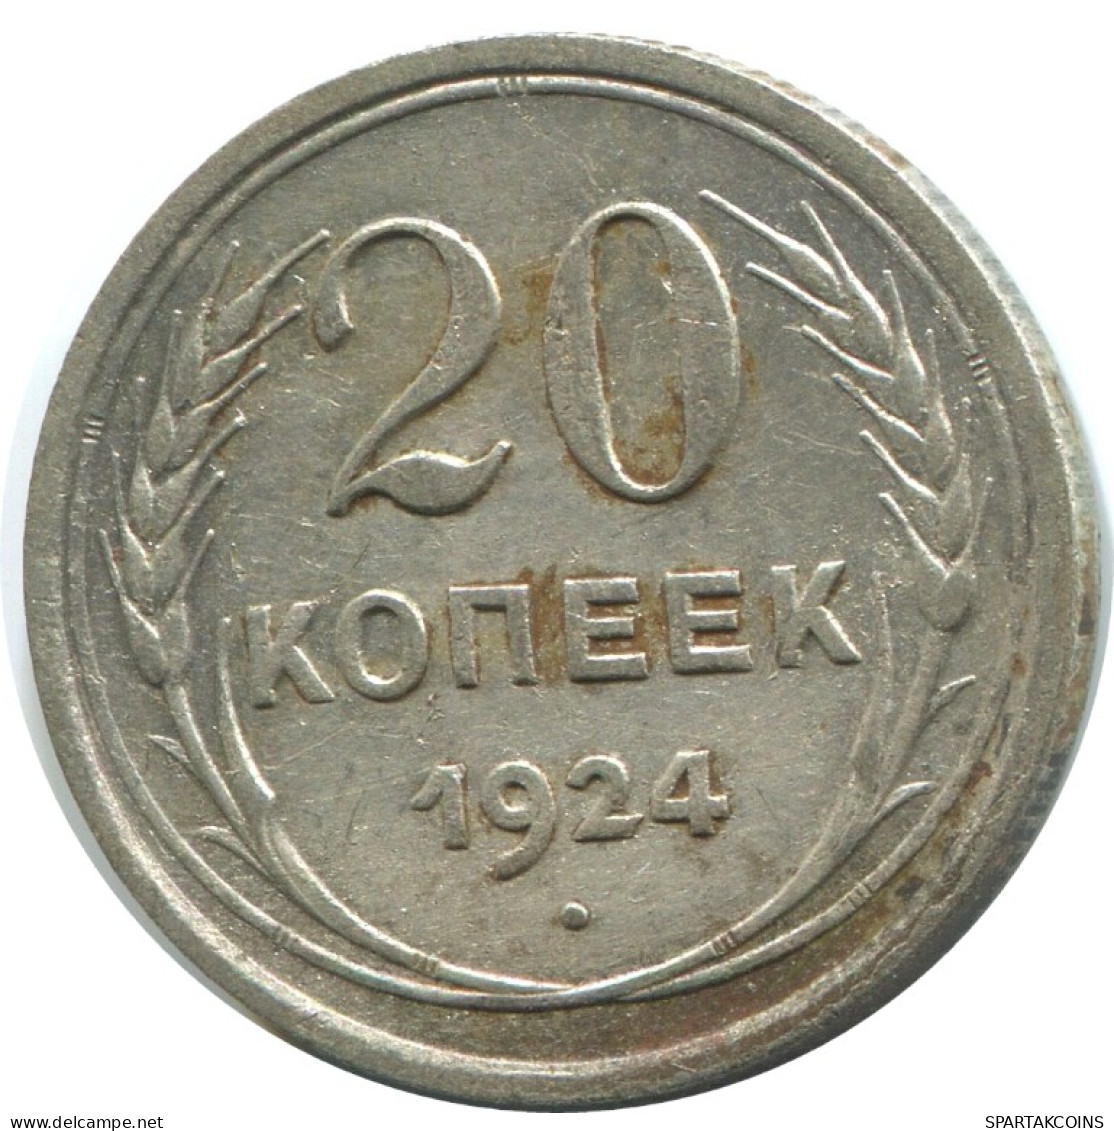 20 KOPEKS 1924 RUSSLAND RUSSIA USSR SILBER Münze HIGH GRADE #AF282.4.D.A - Russland